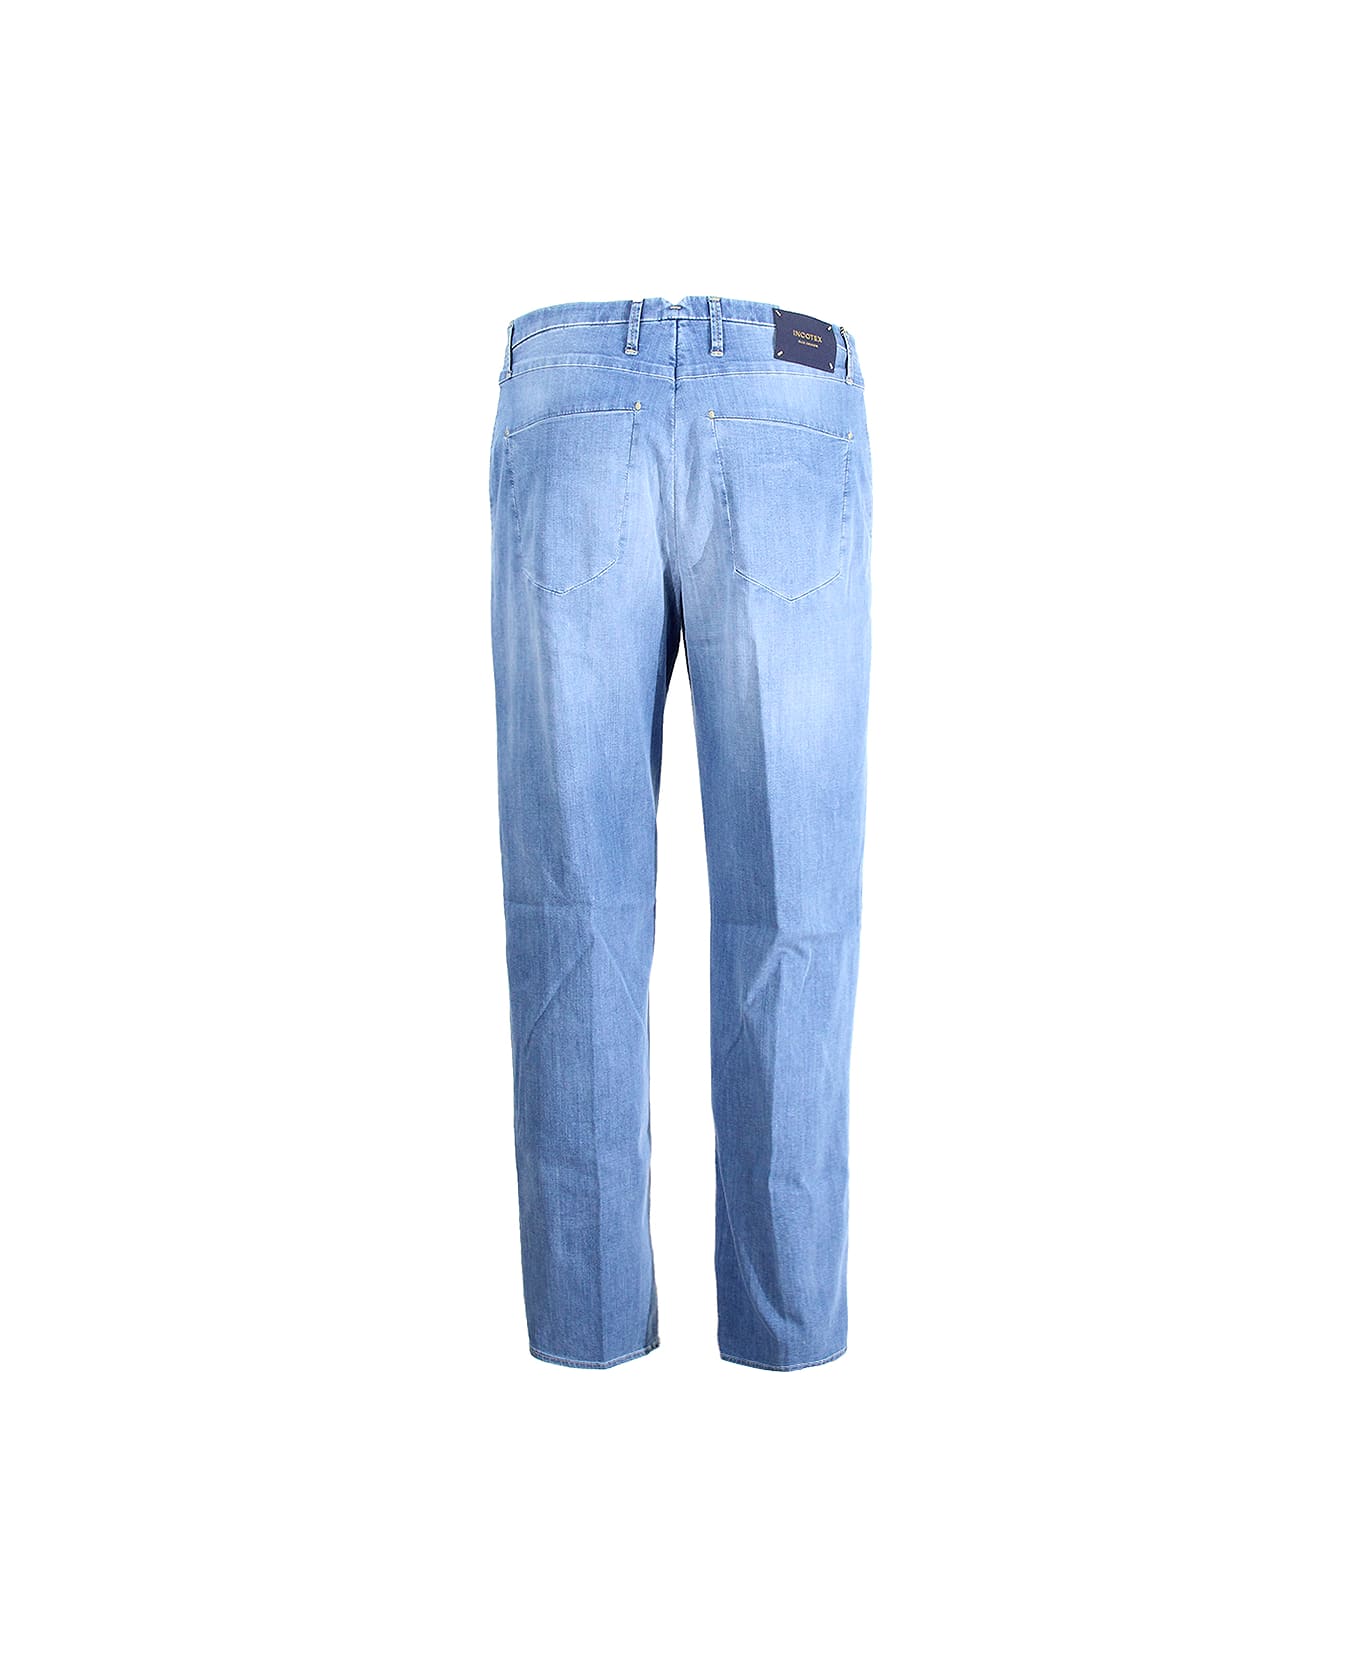 Incotex Jeans Incotex Blue Division - Clear Blue デニム